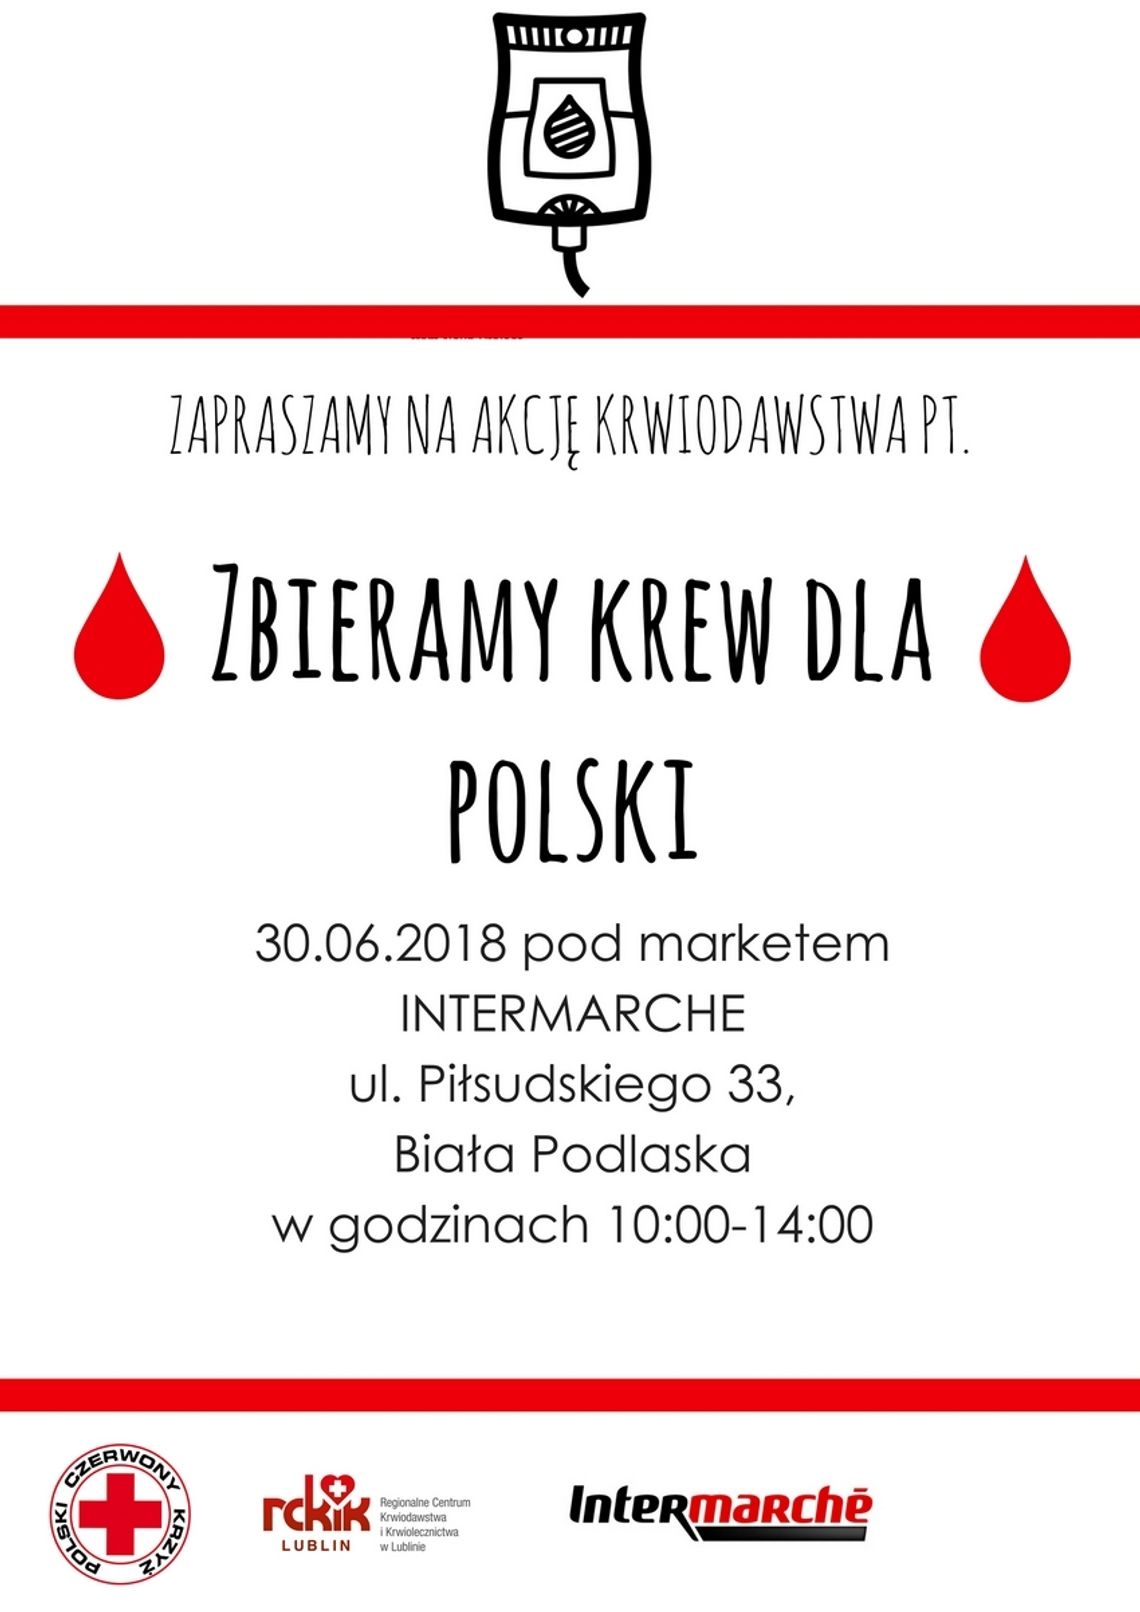 „Zbieramy krew dla Polski”